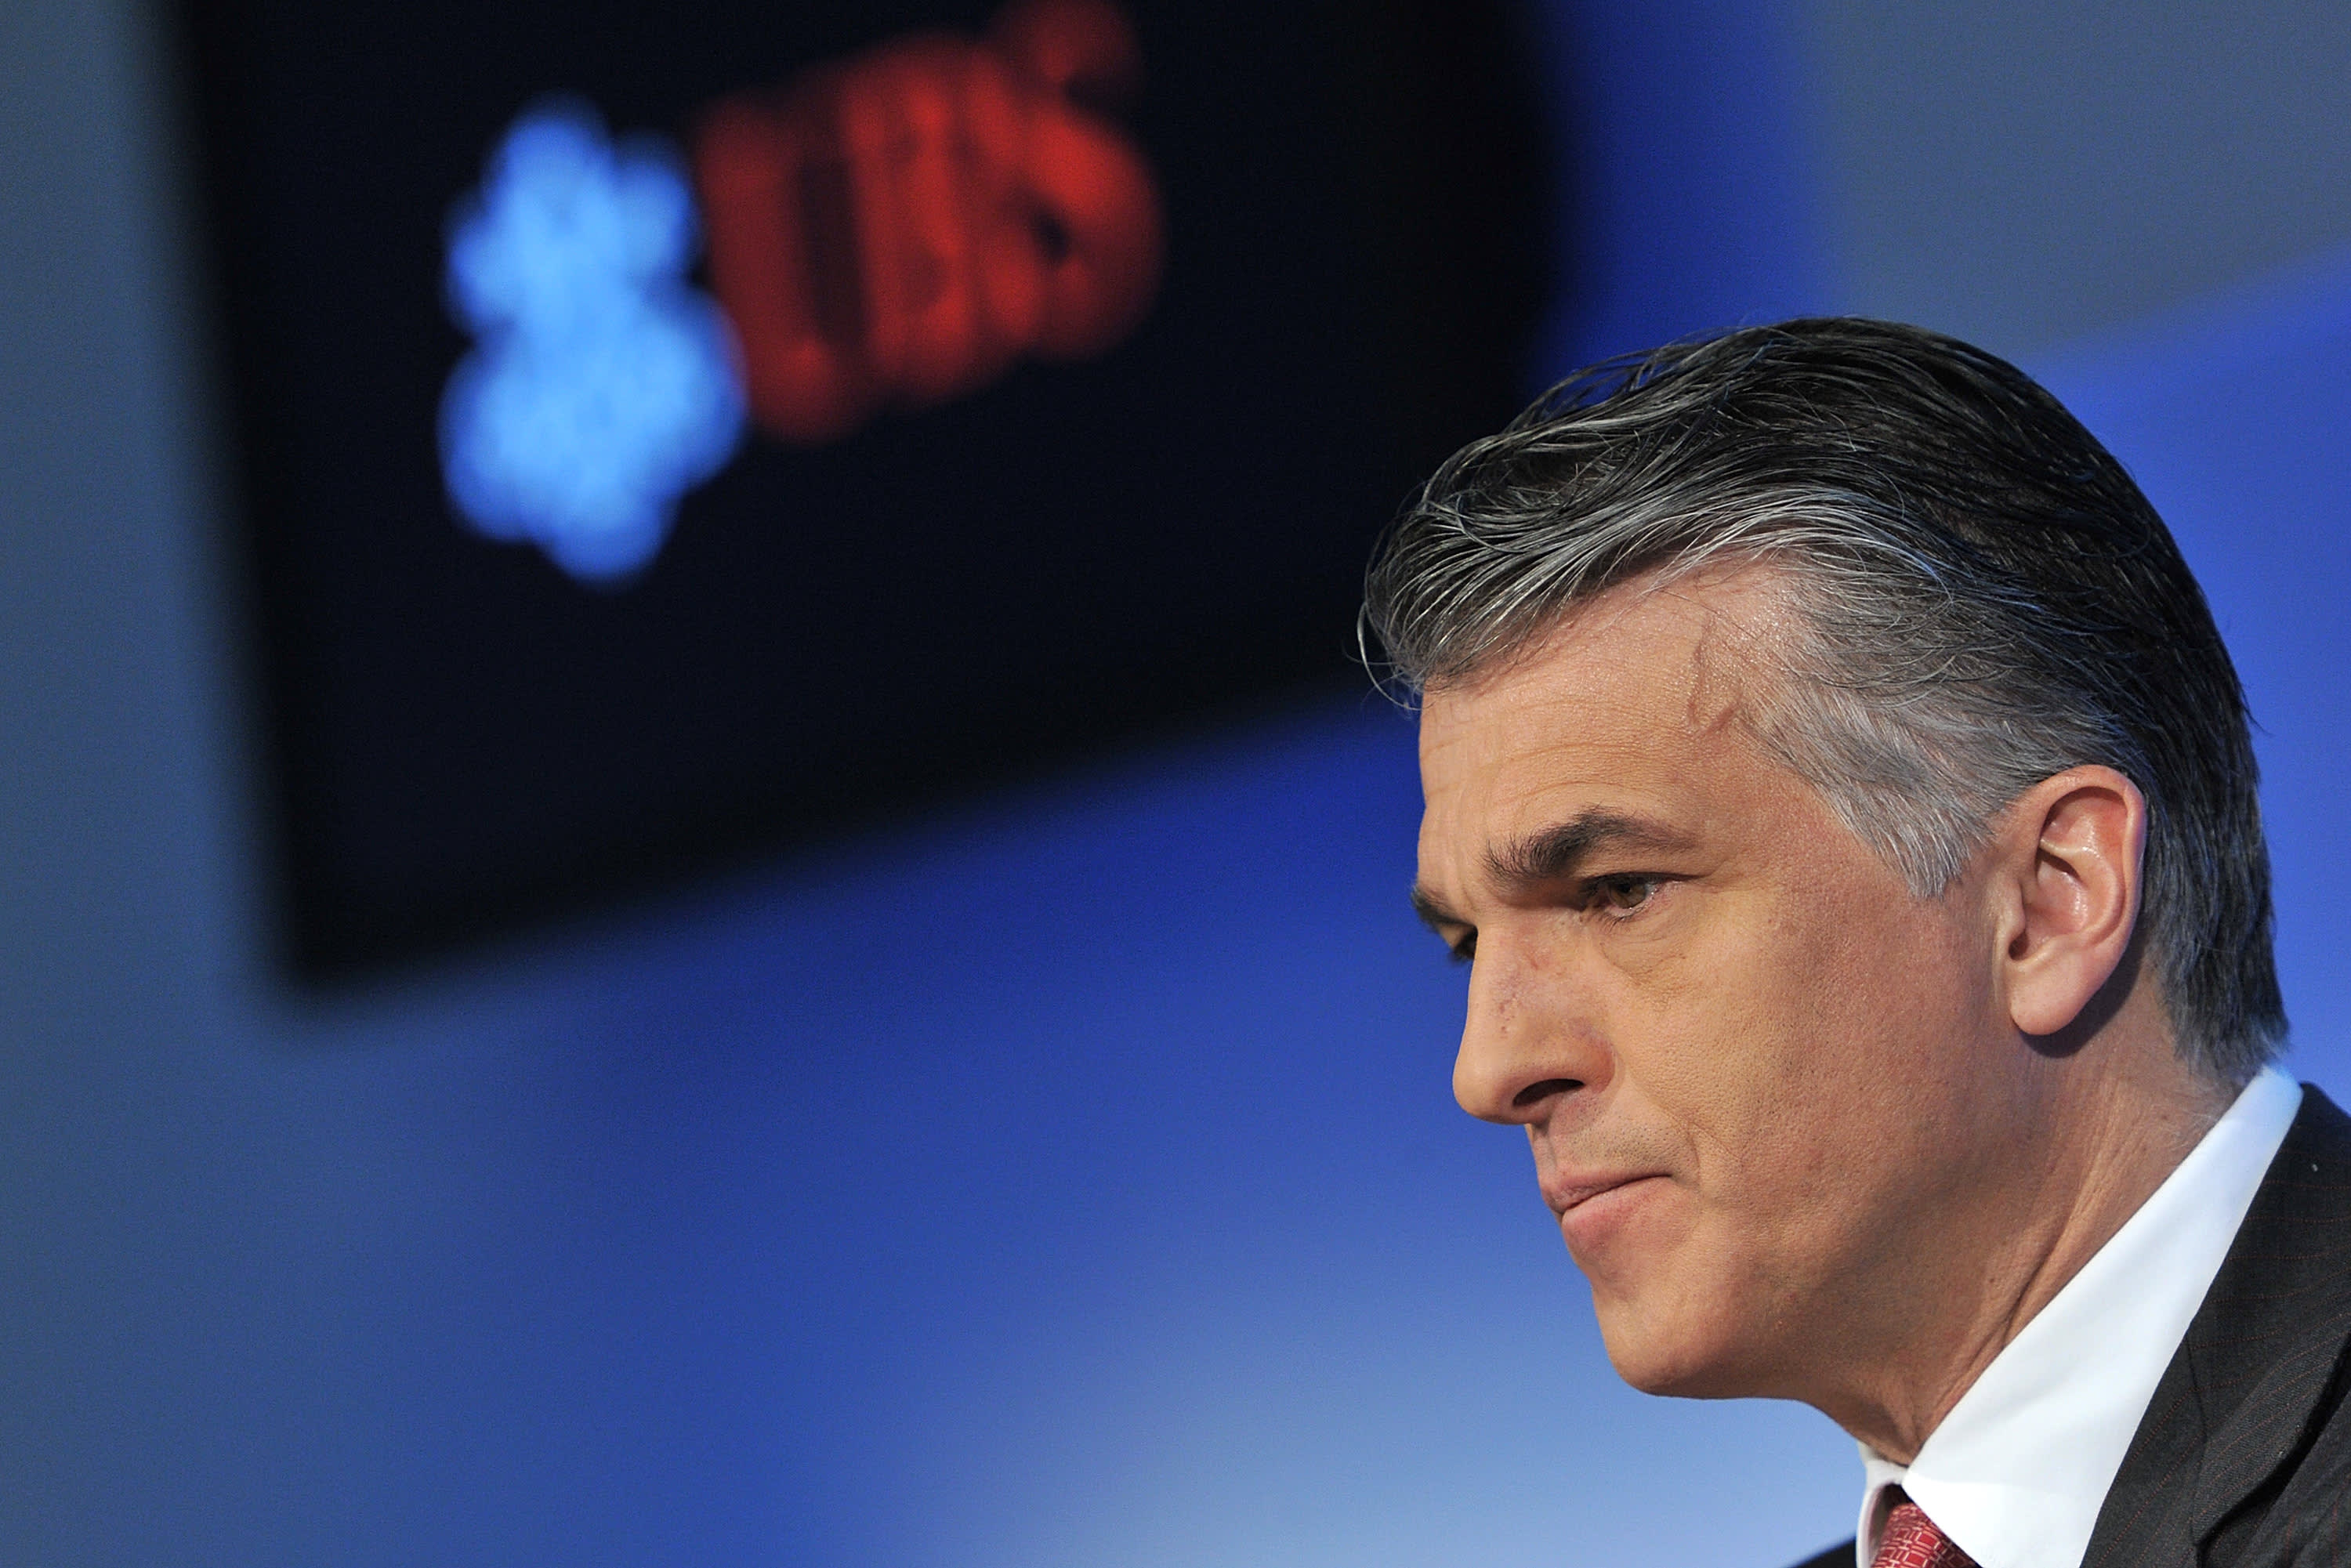 UBS telah menunjuk Sergio Ermotti sebagai CEO baru grup tersebut, setelah akuisisi Credit Suisse